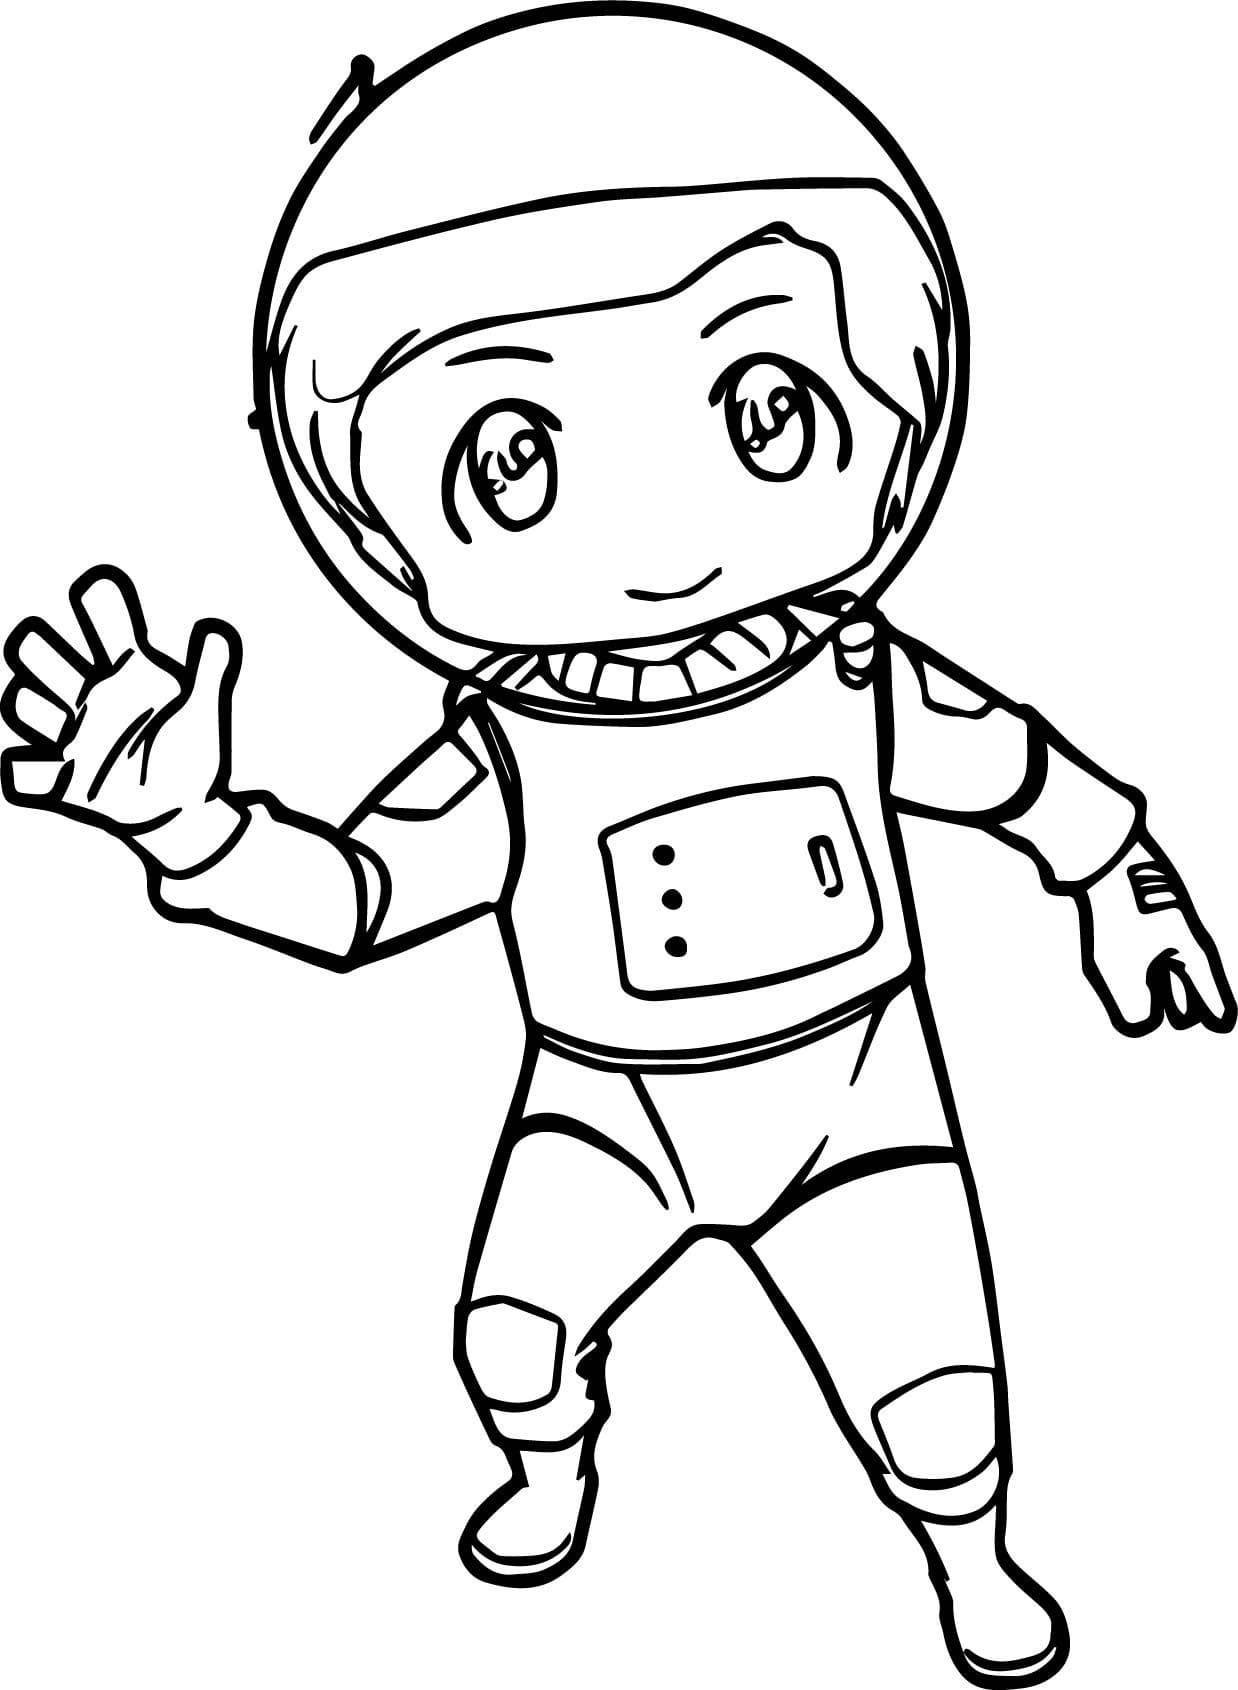 космонавт раскраска для детей 6-7 лет 5